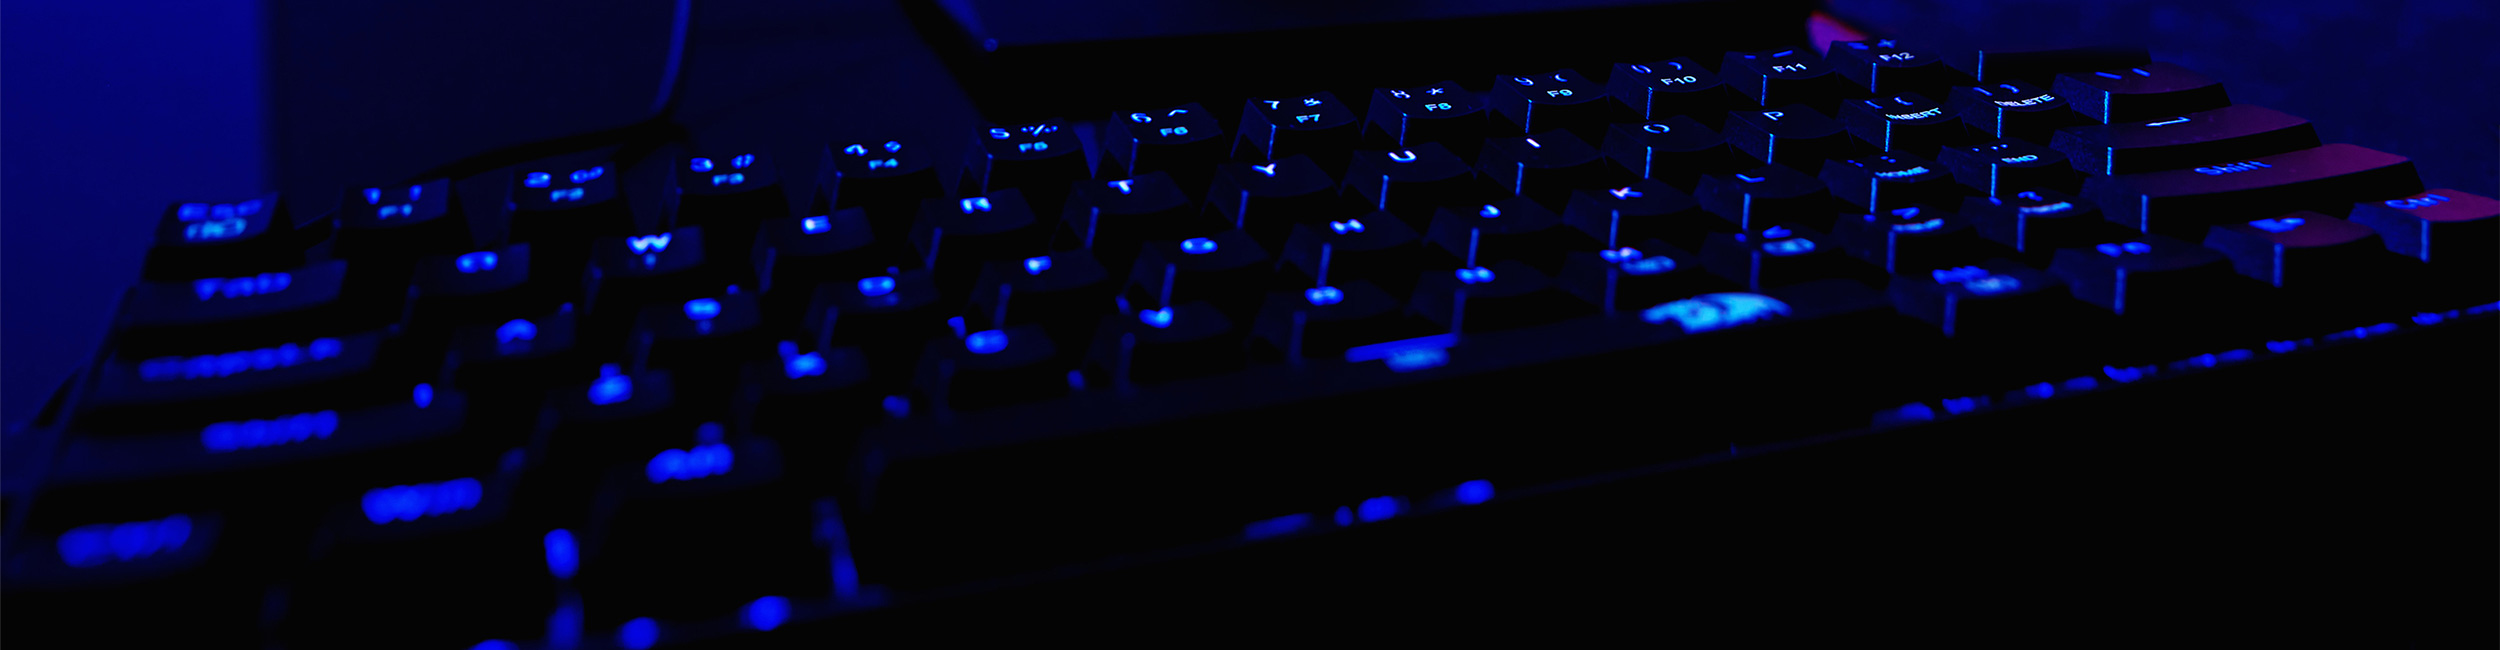 blue lit keyboard